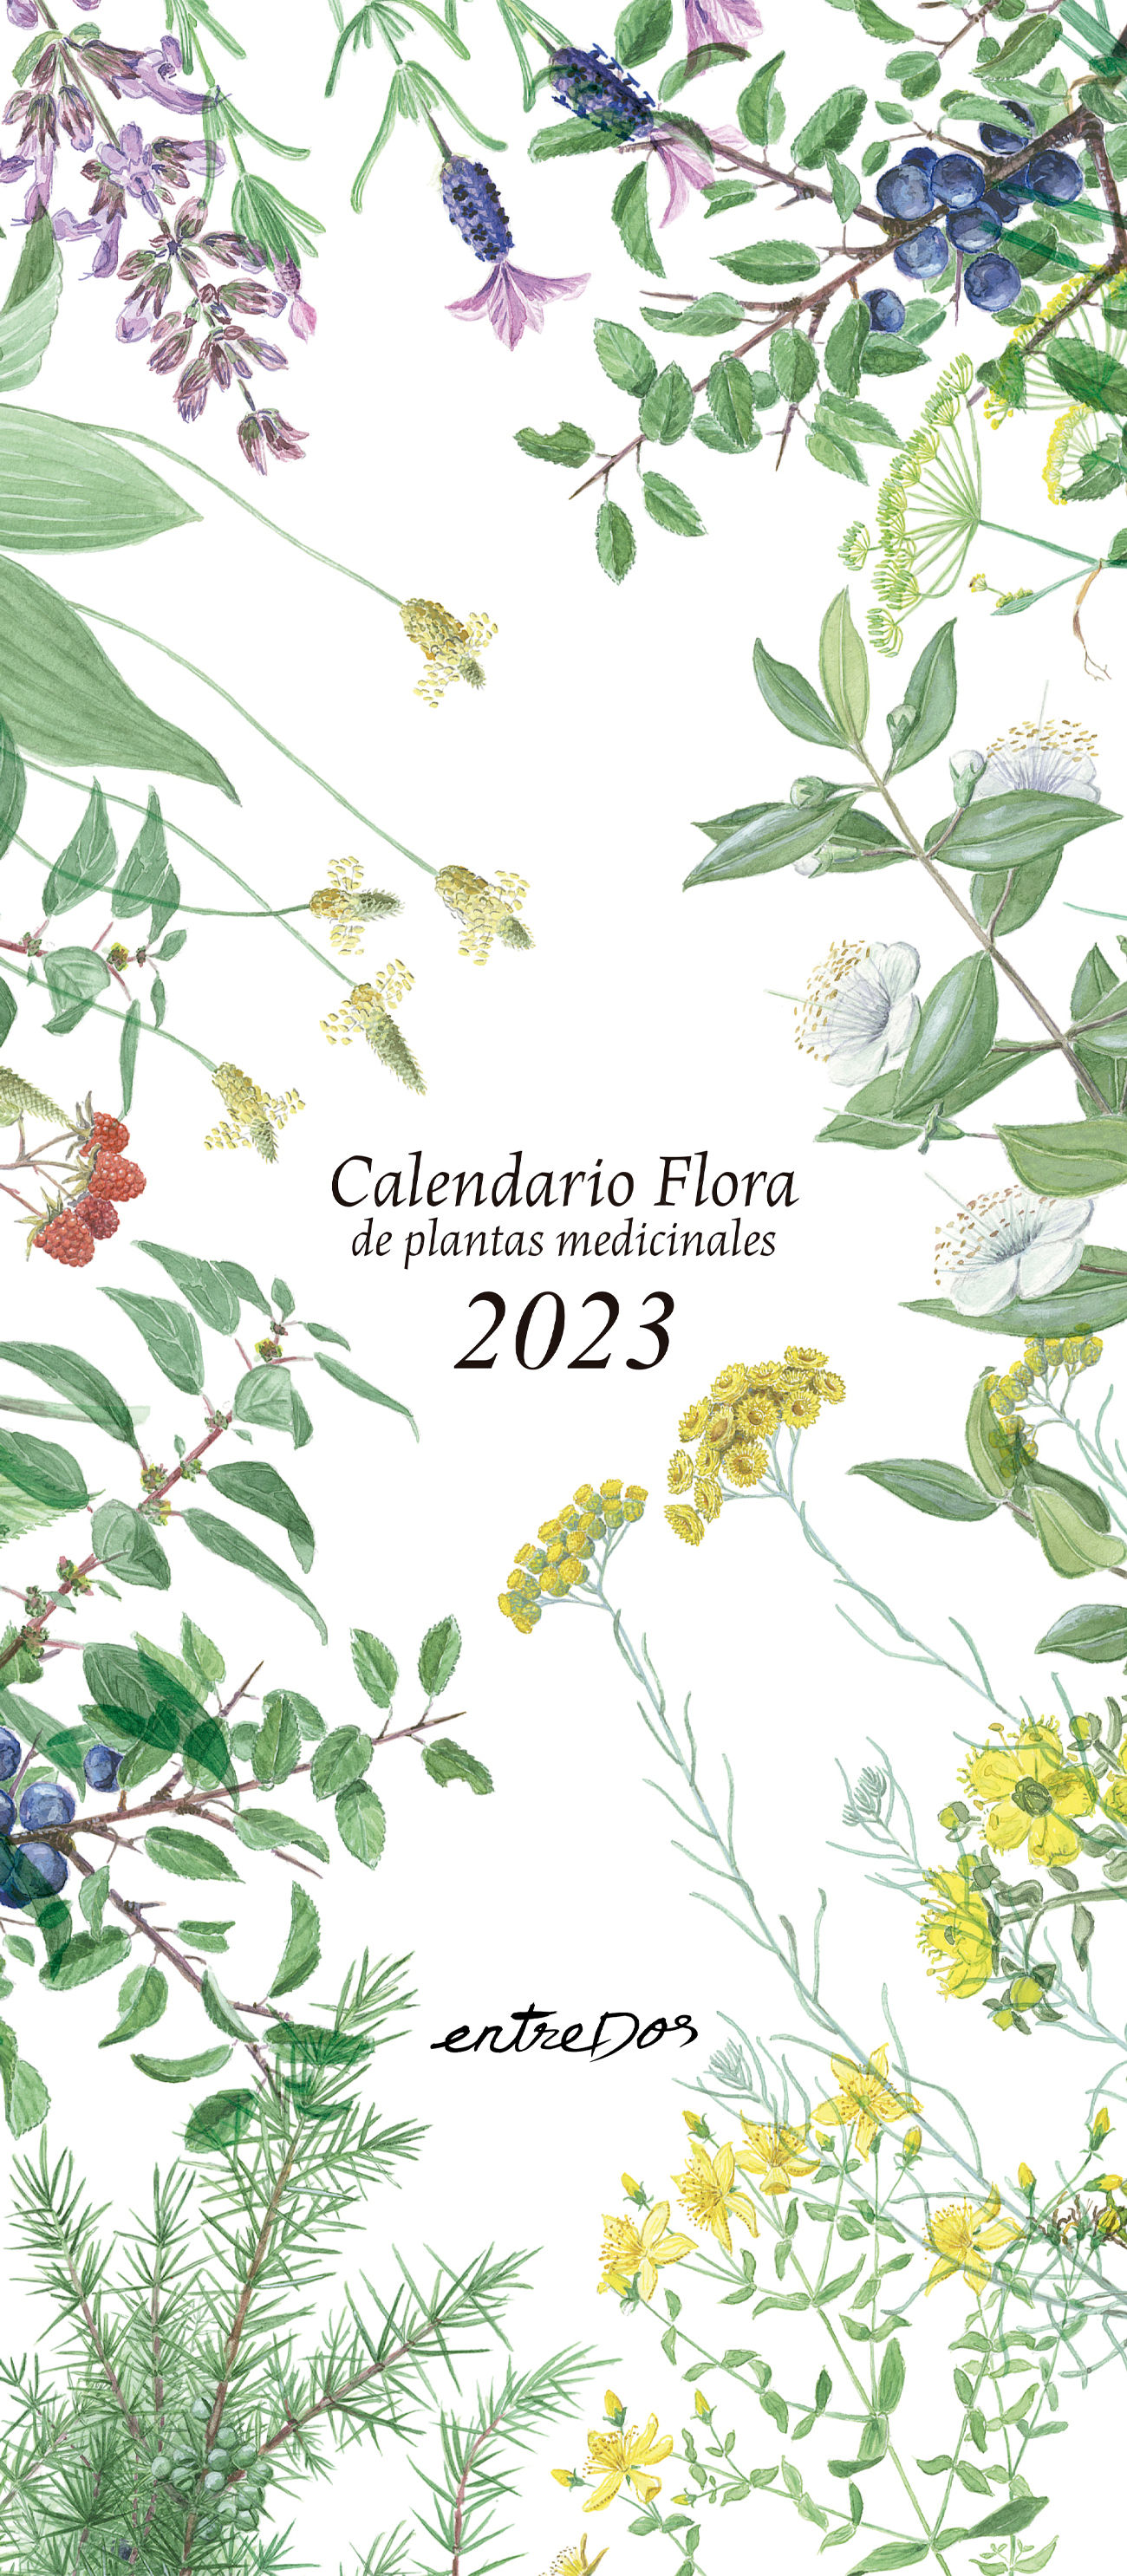 CALENDARIO FLORA 2023 - CASTELLANO. DE PLANTAS MEDICINALES